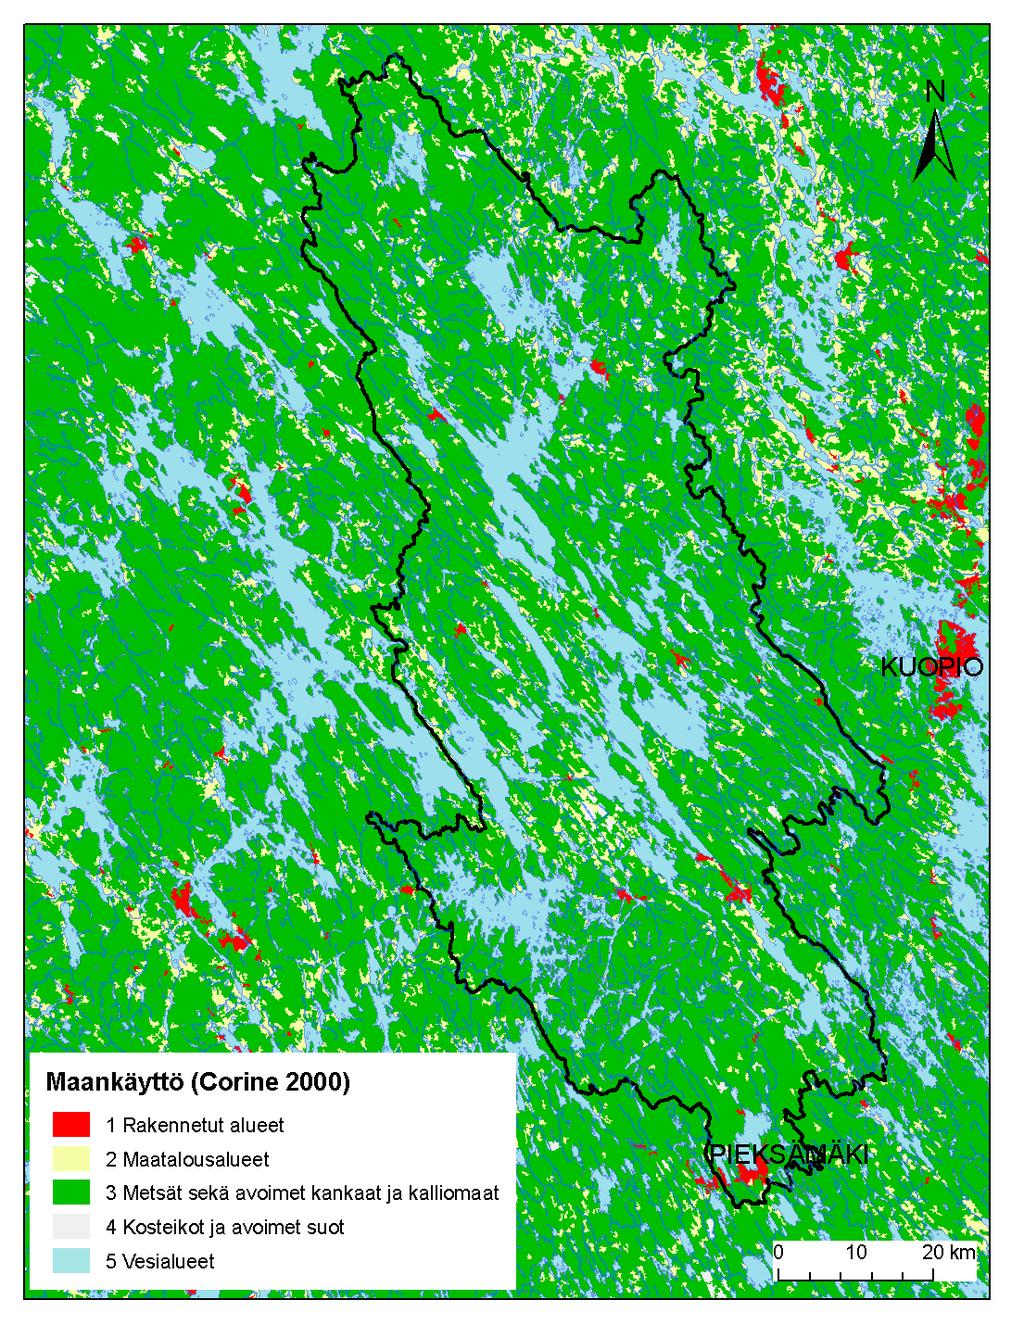 SYKE, EEA Bild 18. Markanvändning i Rautalampi-ledens delavrinningsområde 14.7. Enligt det geografiska datamaterialet RHR2008 är invånarantalet i Rautalampi-ledens avrinningsområde 40 359 personer.